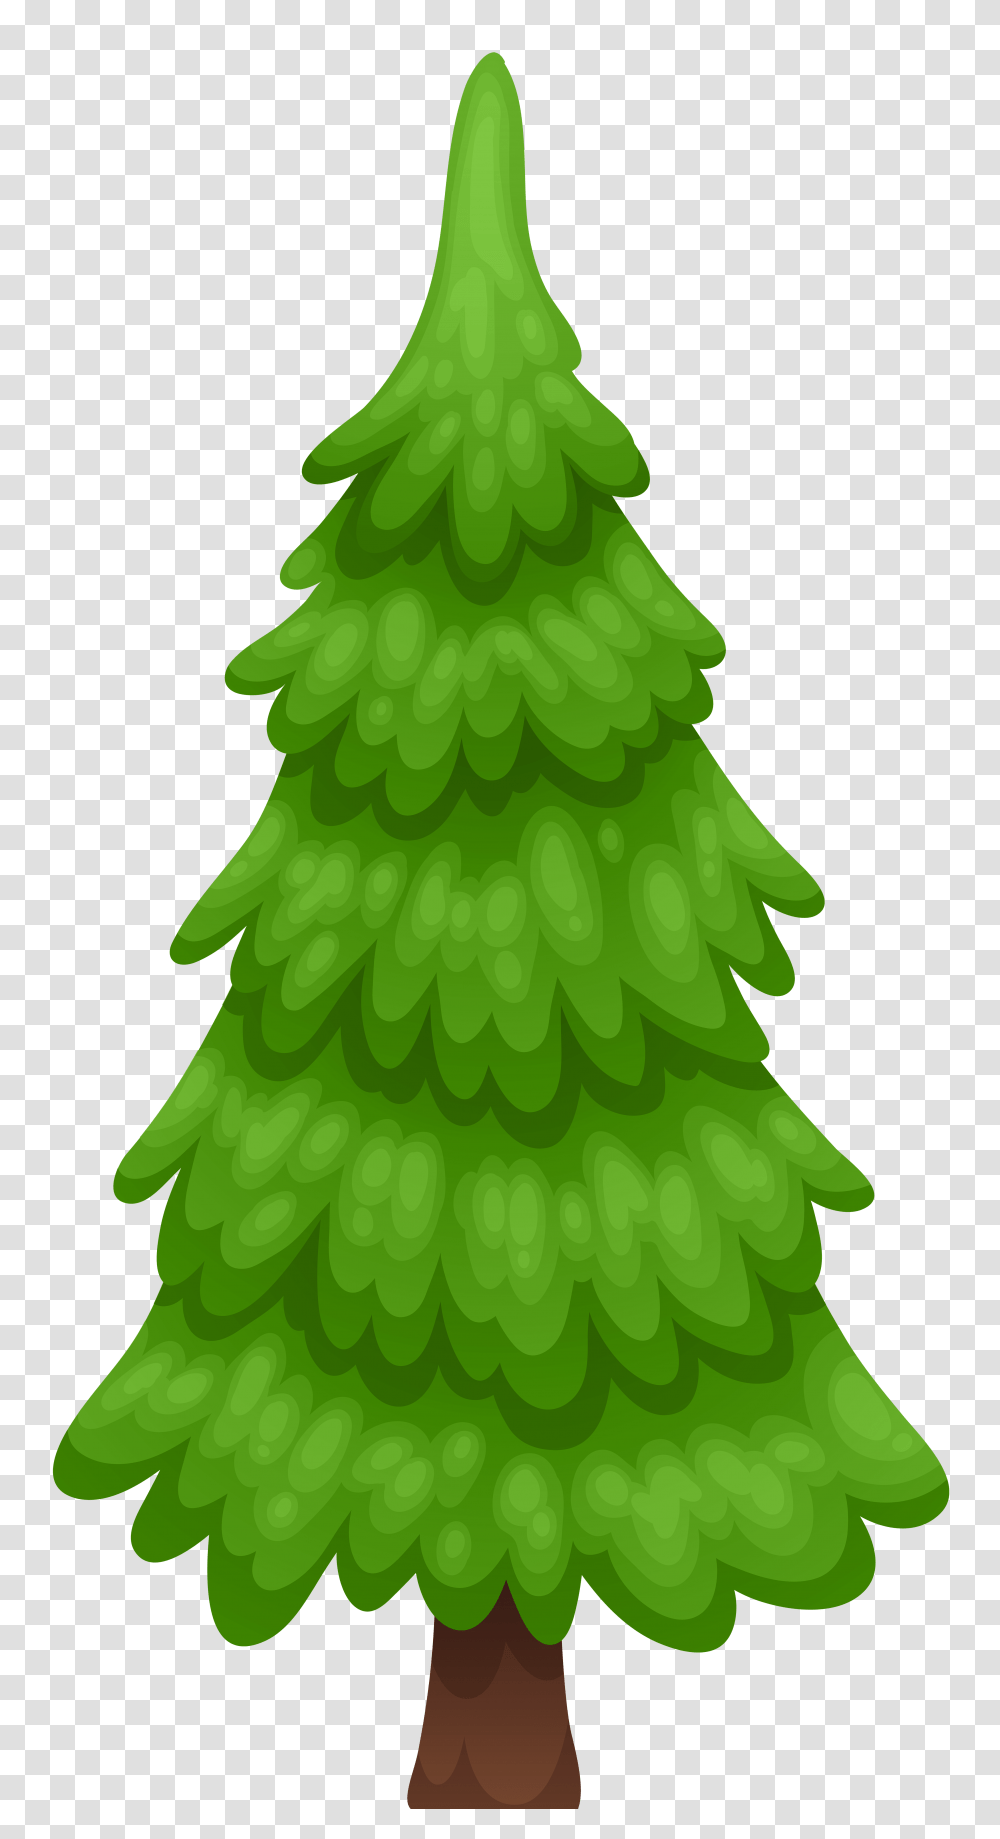 Pine Tree Cartoon Clip Art, Plant, Ornament, Green, Rug Transparent Png